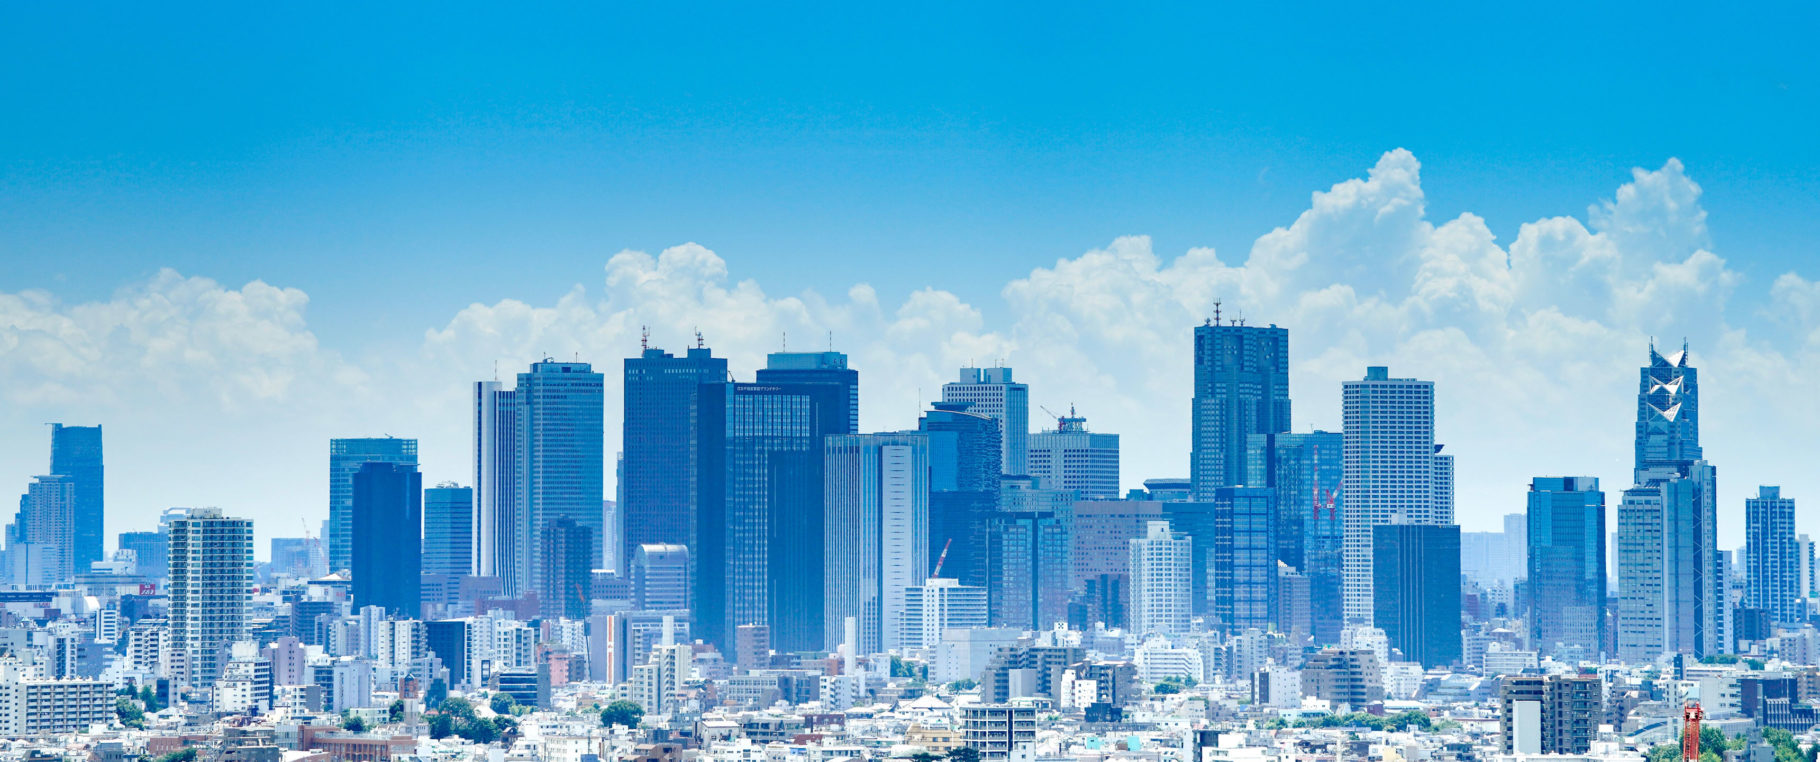 Hãy chiêm ngưỡng bức hình nền Tokyo Blue đầy tinh tế và đẳng cấp để bạn có thể tận hưởng không gian làm việc và giải trí tuyệt vời hơn. Hãy nhanh chân tải ảnh về để trang trí cho desktop của mình ngay nhé!